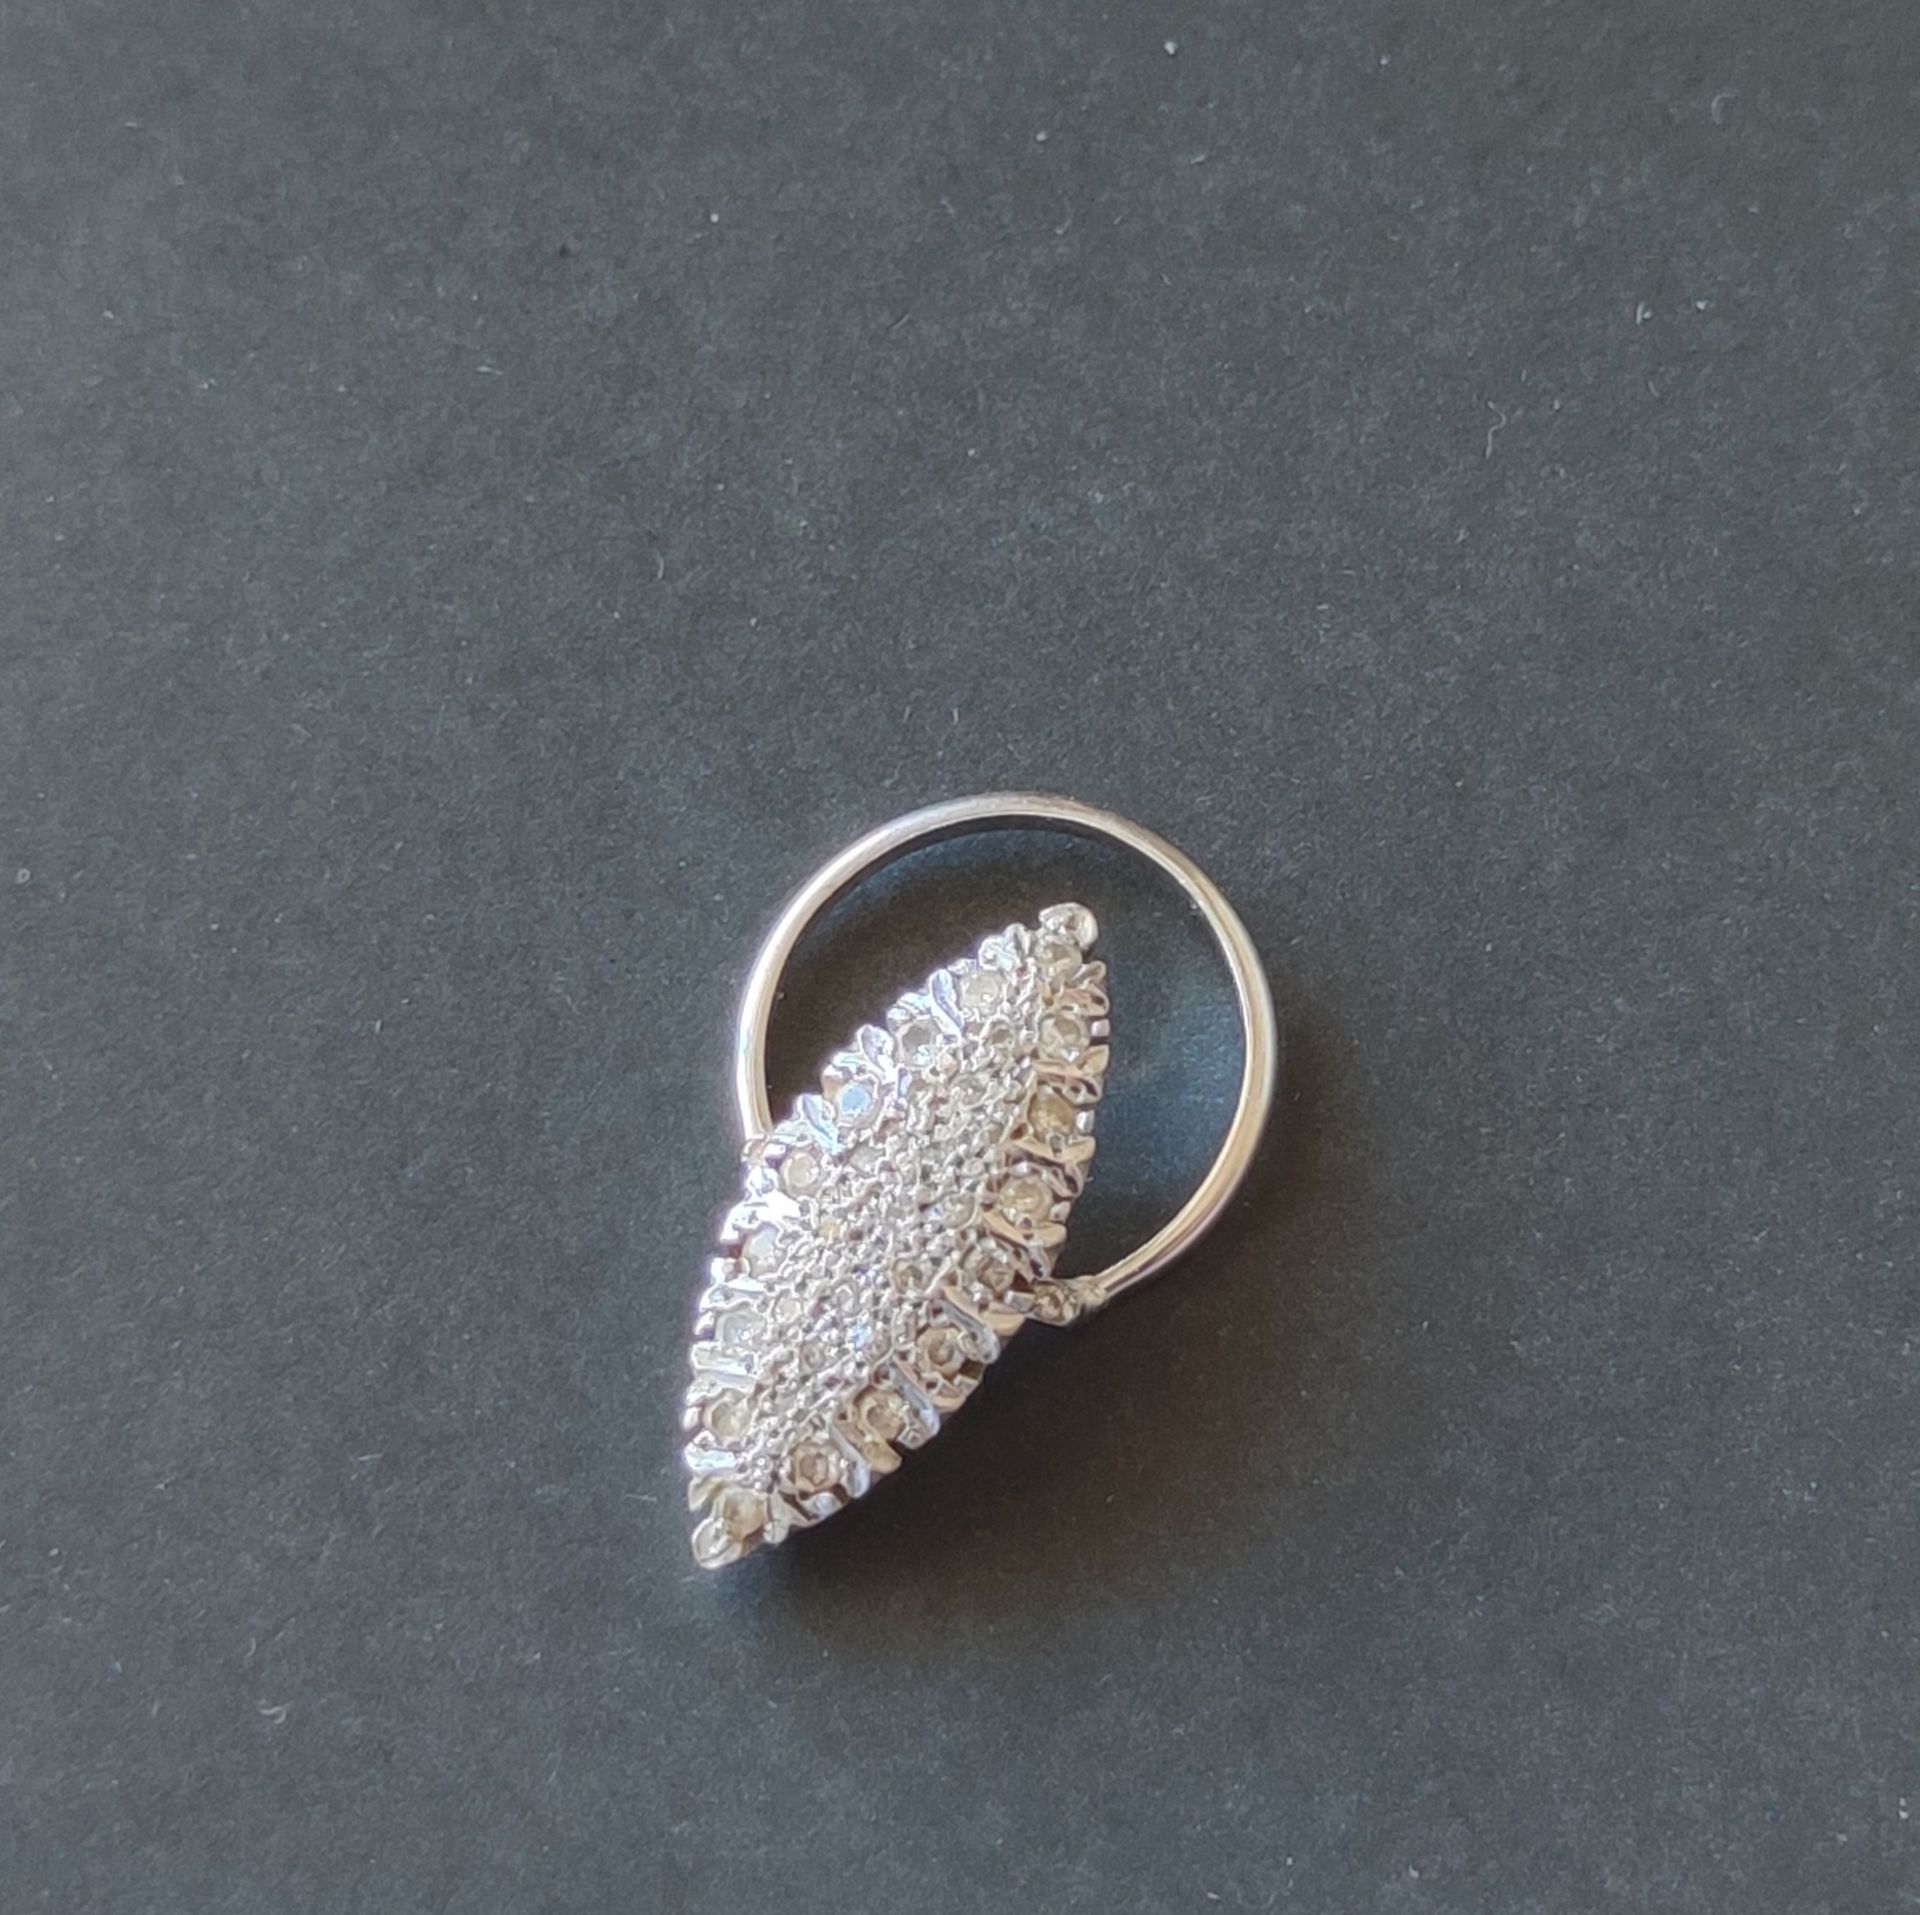 Null 变成围巾的戒指 750°/°°白金，梭形图案镶嵌钻石碎片，微量控制 6.6克毛重(事故)